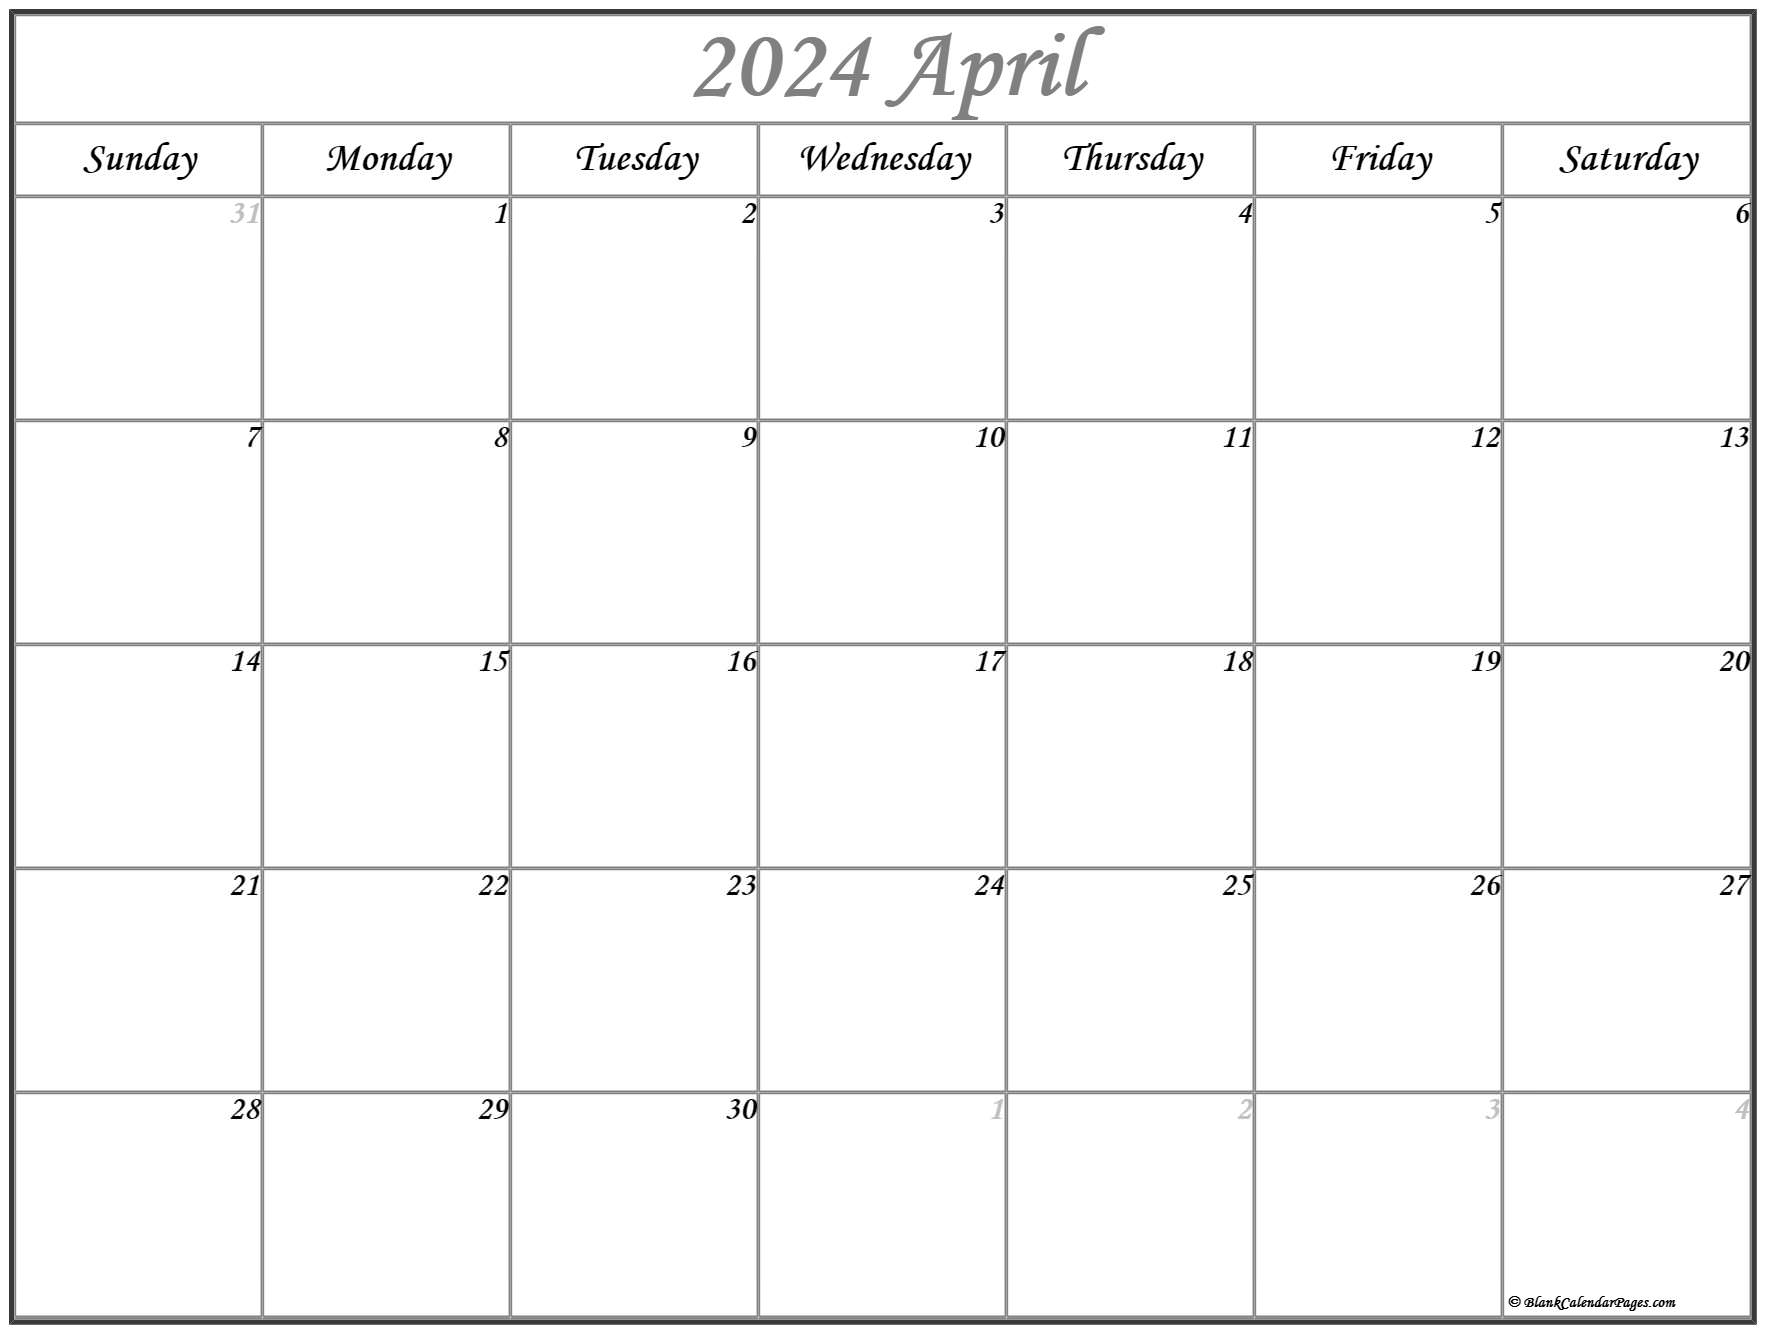 2024 April Calendar Odia Free Download Pdf Zarla Kathryne